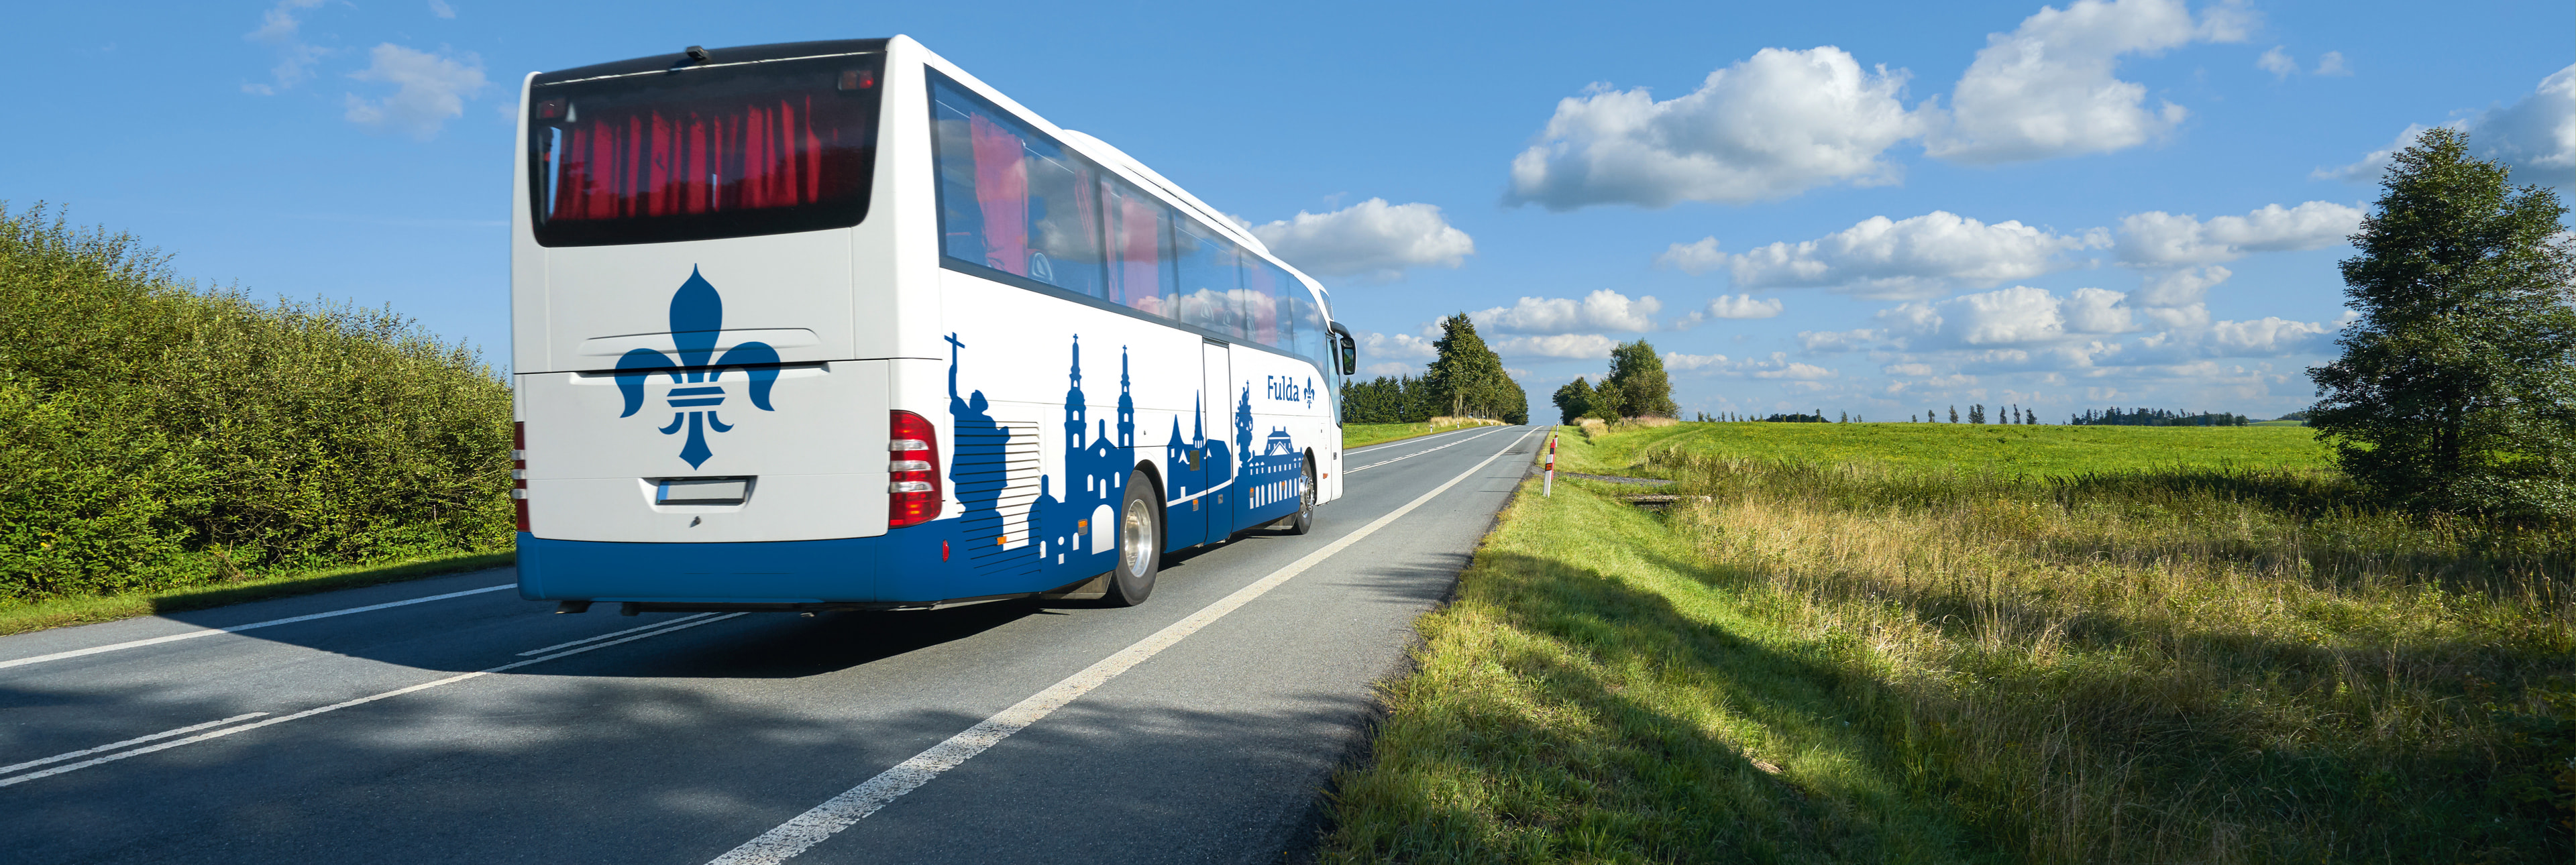 Anreise & Verkehr - Tourismus Fulda